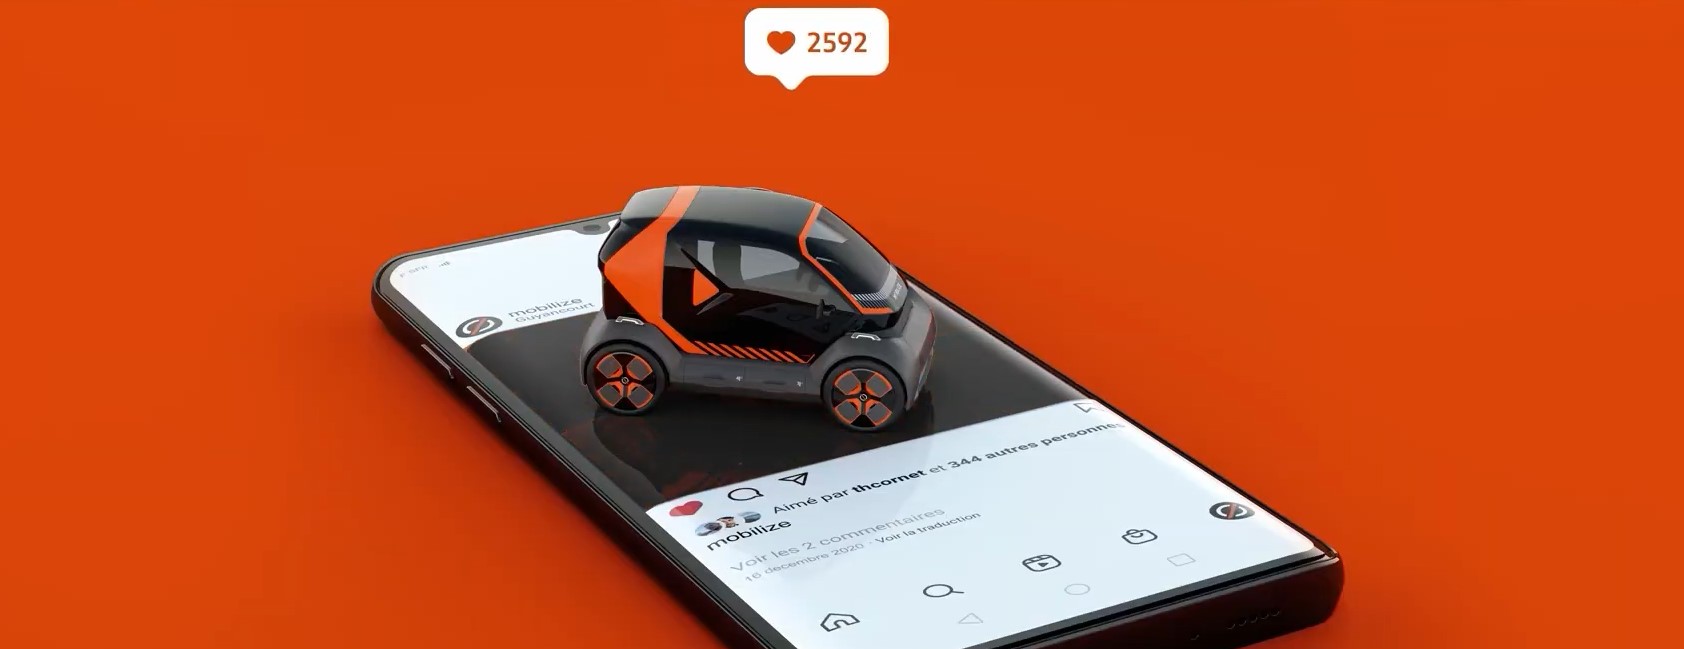 Renault: Электромобиль для каршеринга Mobilize создан с учетом мнения пользователей